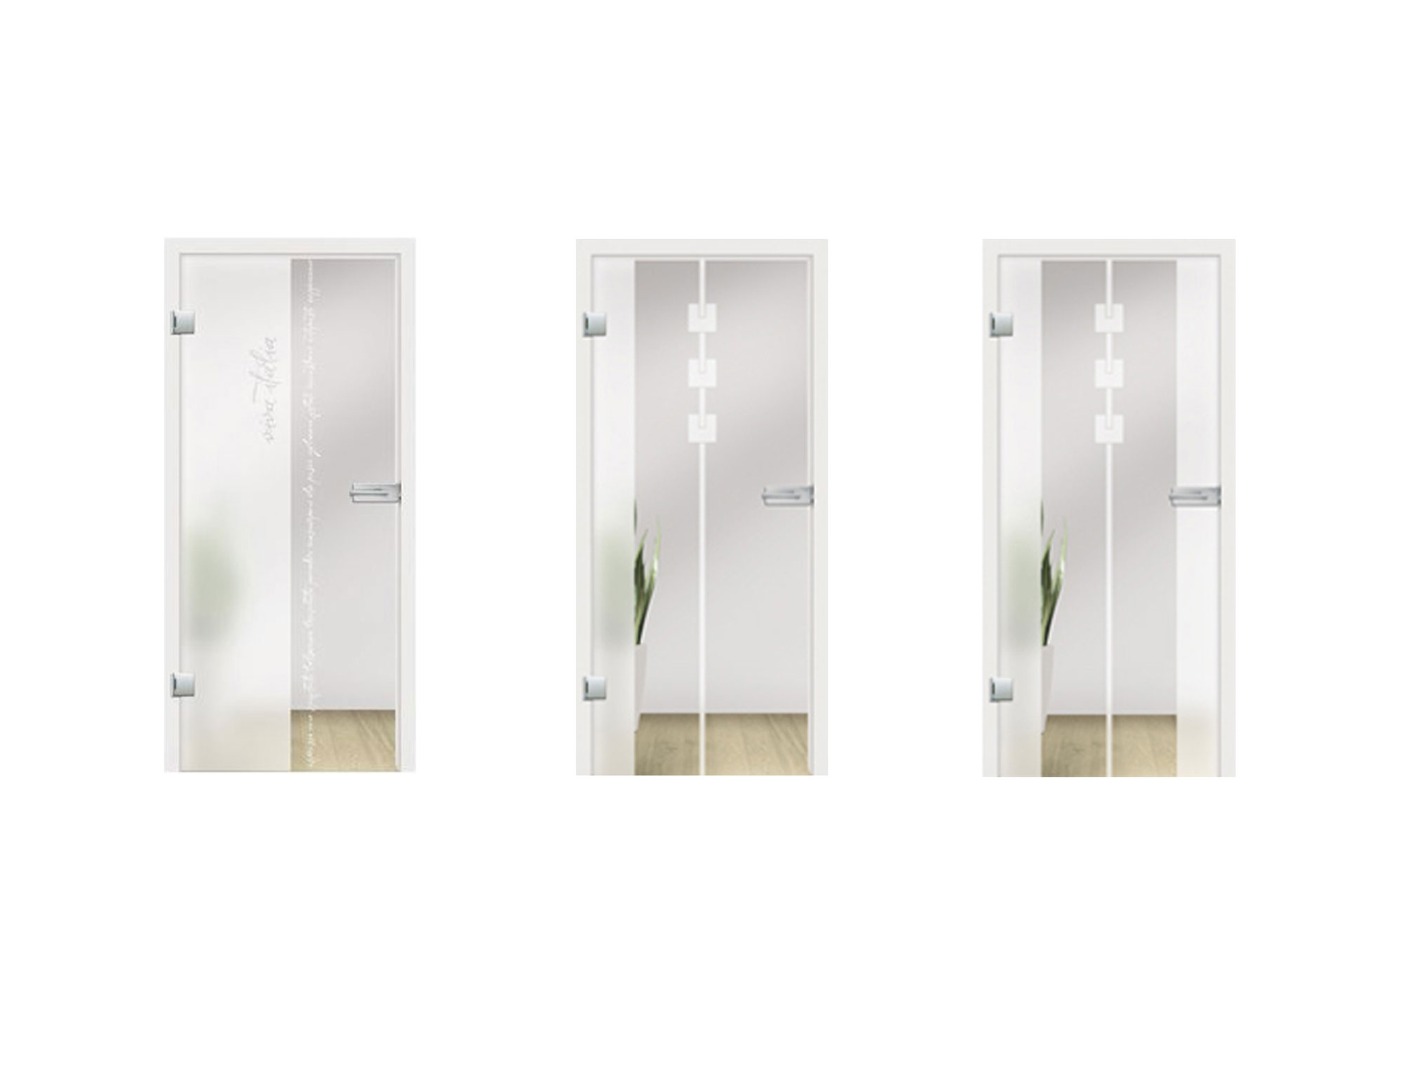 Viva Glass Door Design - Internal Glass Double Doors